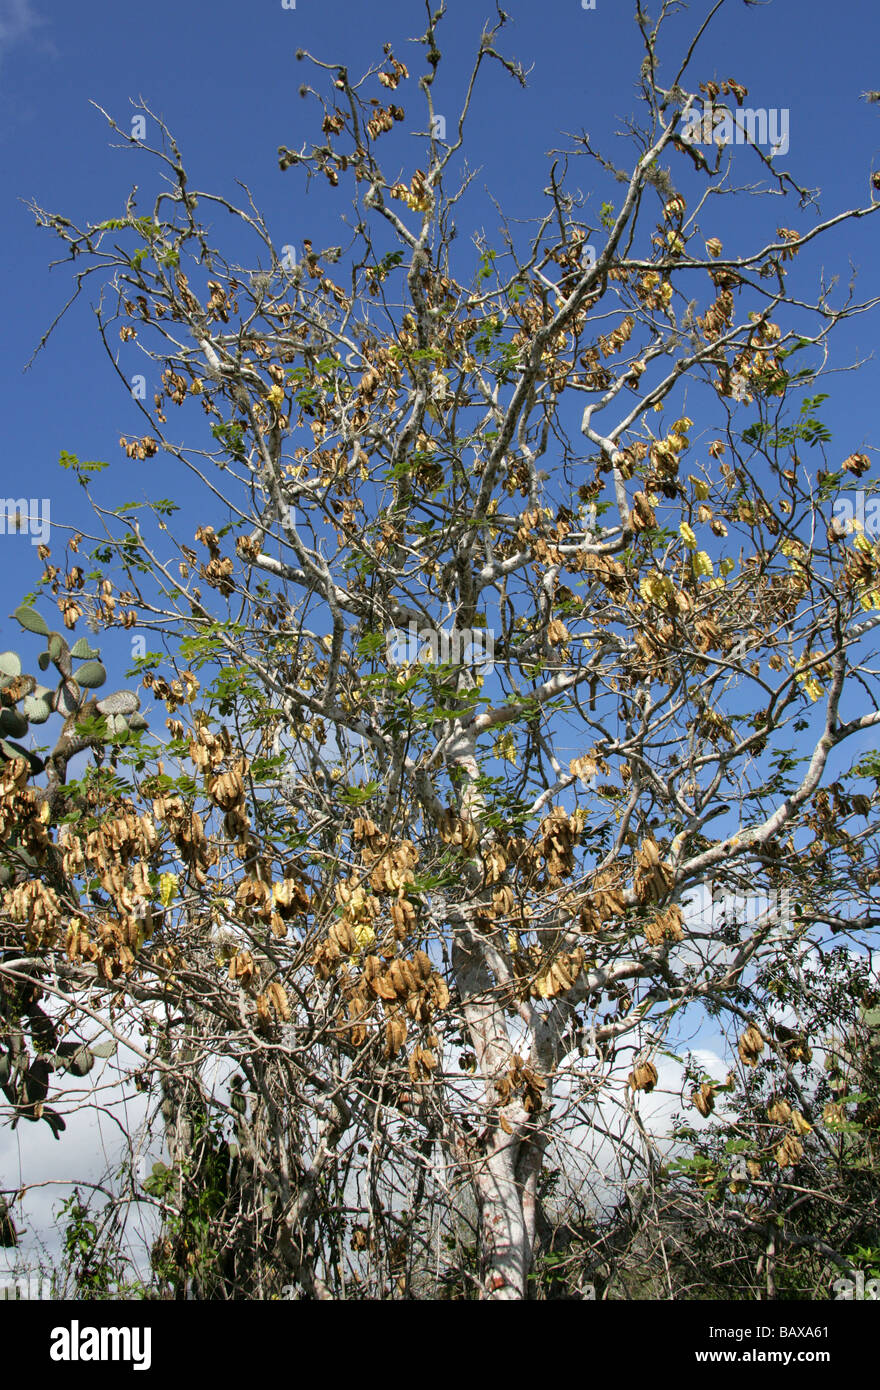 Palo santo o santa vainas semillas de árboles de Bursera graveolens, Isla Santa Cruz en diciembre, las Islas Galápagos, Ecuador Fotografía de stock - Alamy